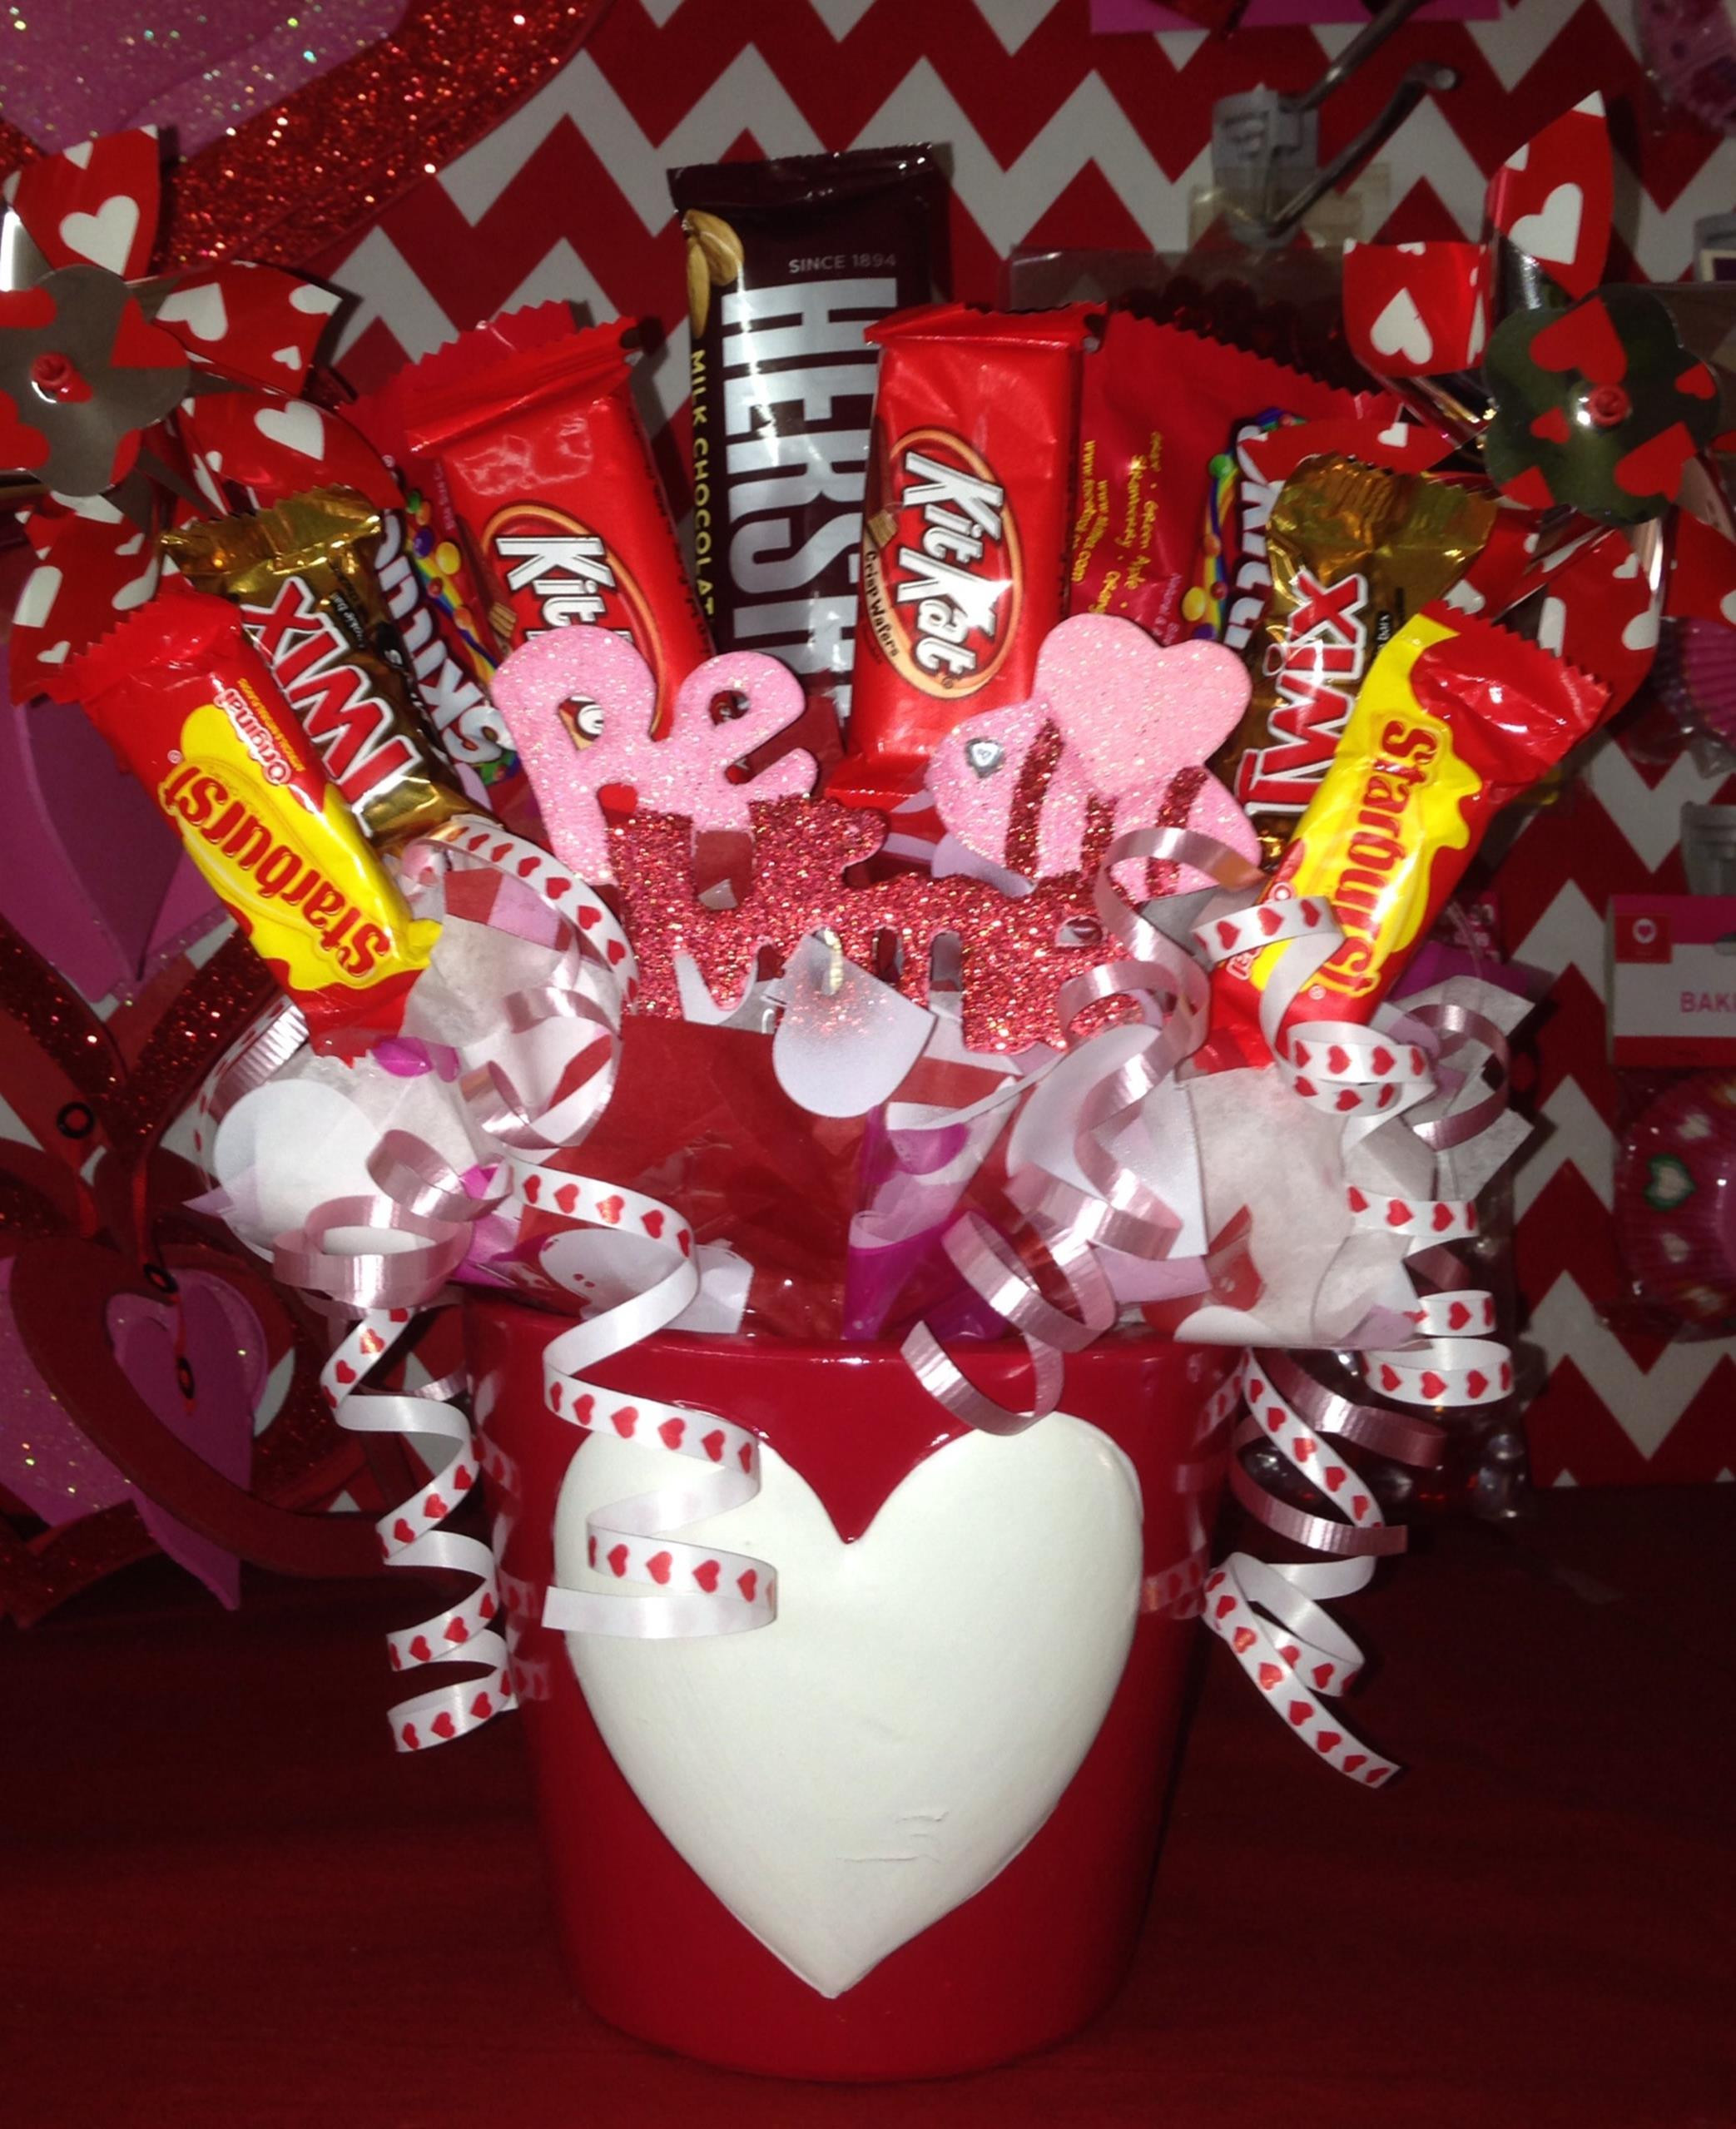 Be My Valentine Gift Ideas
 Valentine Candy Bouquet Ideas 16 ViralDecoration